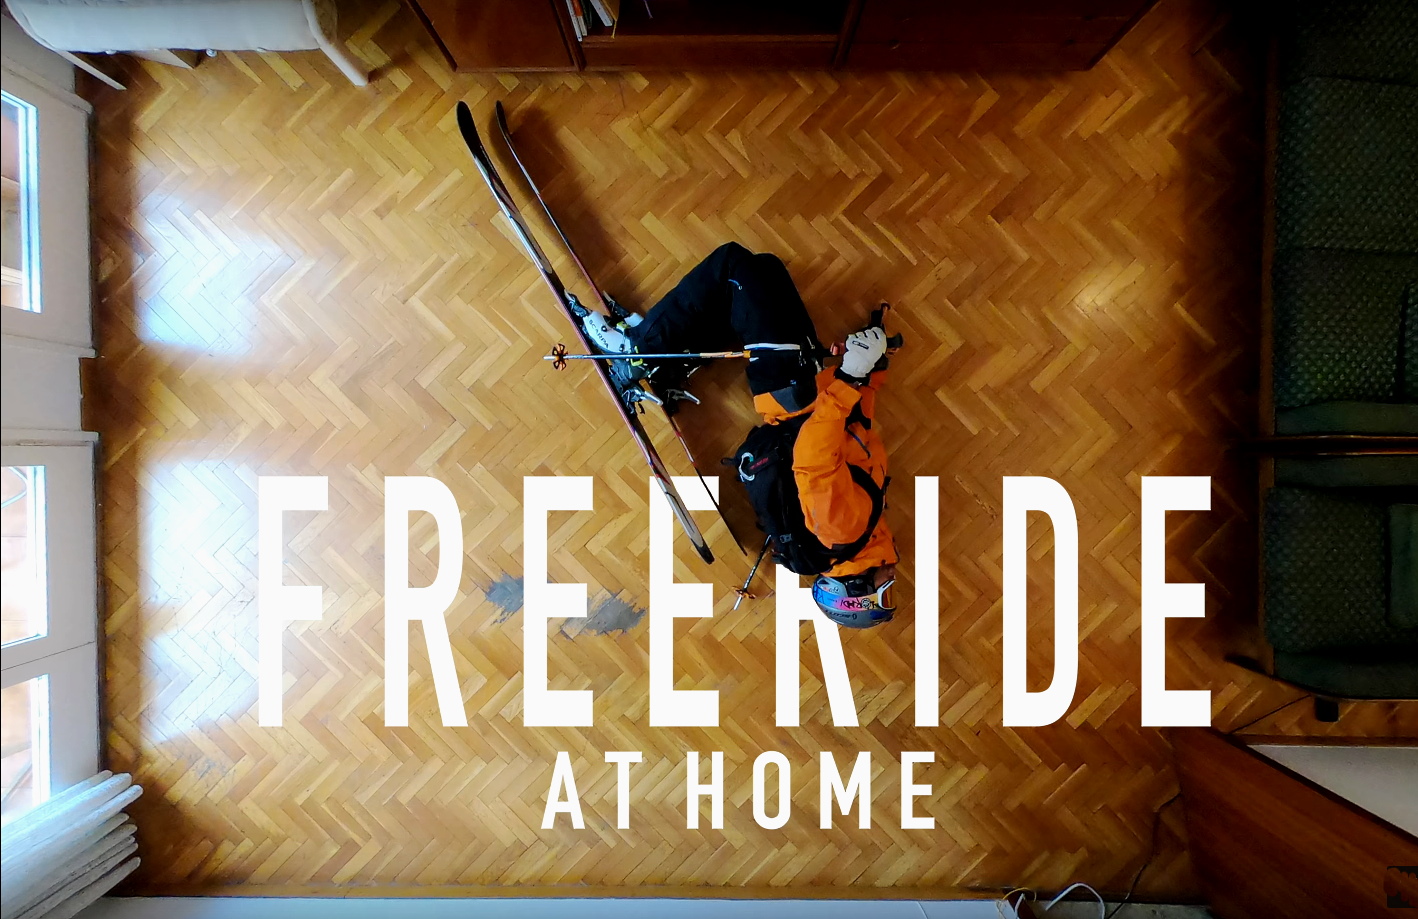 La historia del vídeo viral de un barcelonés que triunfa en el encierro: “Freeride at Home”